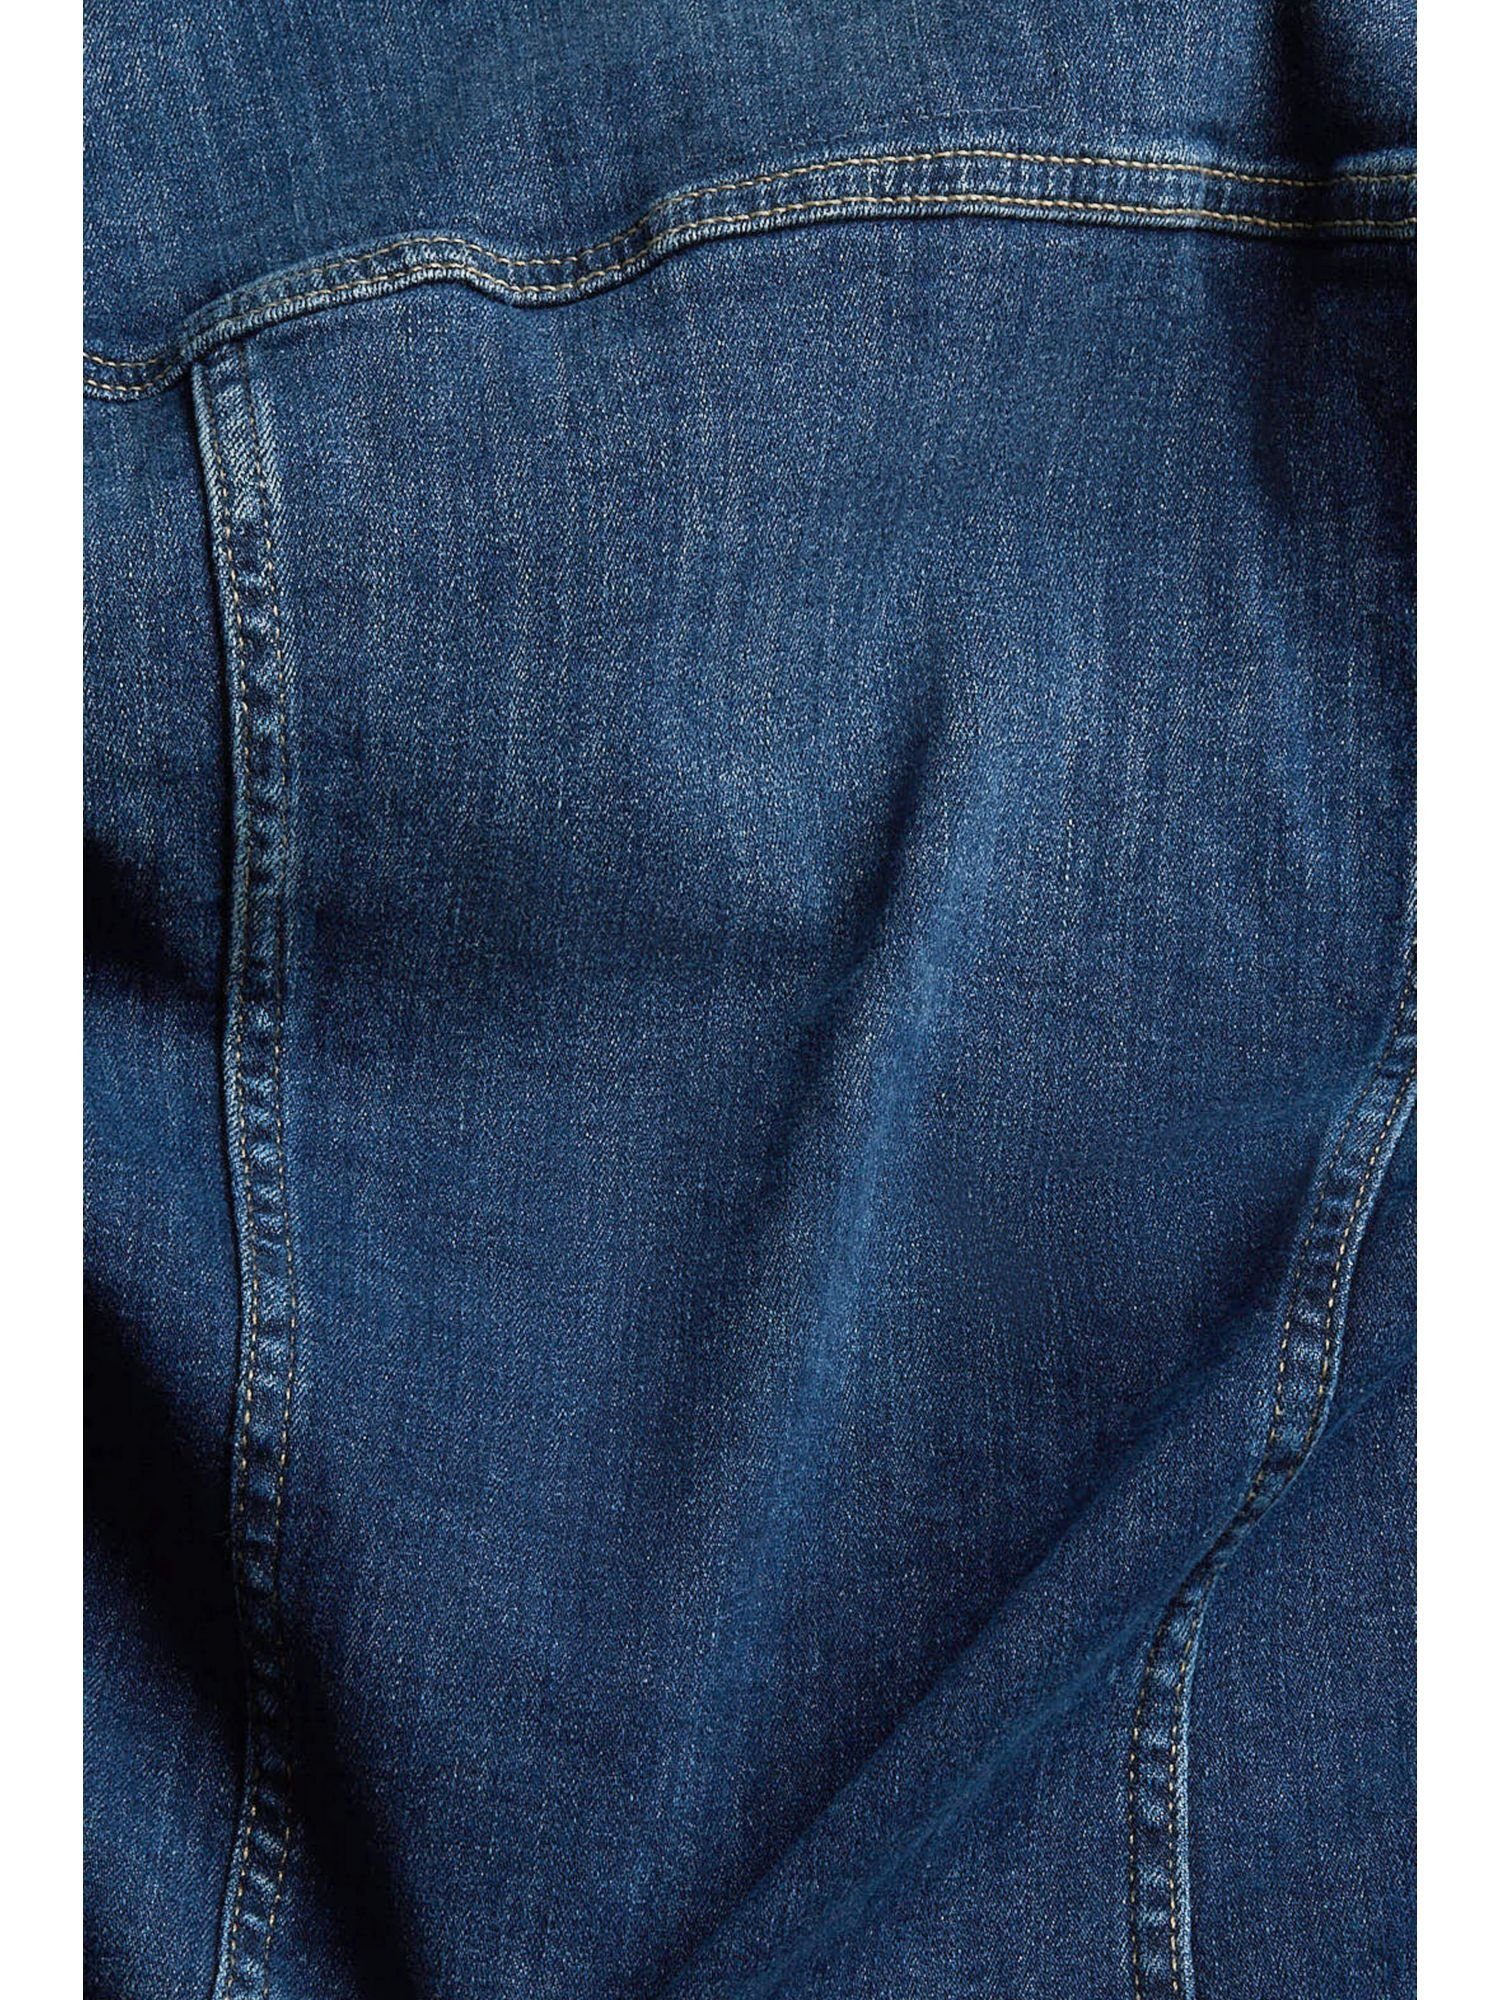 Jeansjacke Passform DARK BLUE Esprit in WASHED Jeansjacke schmaler